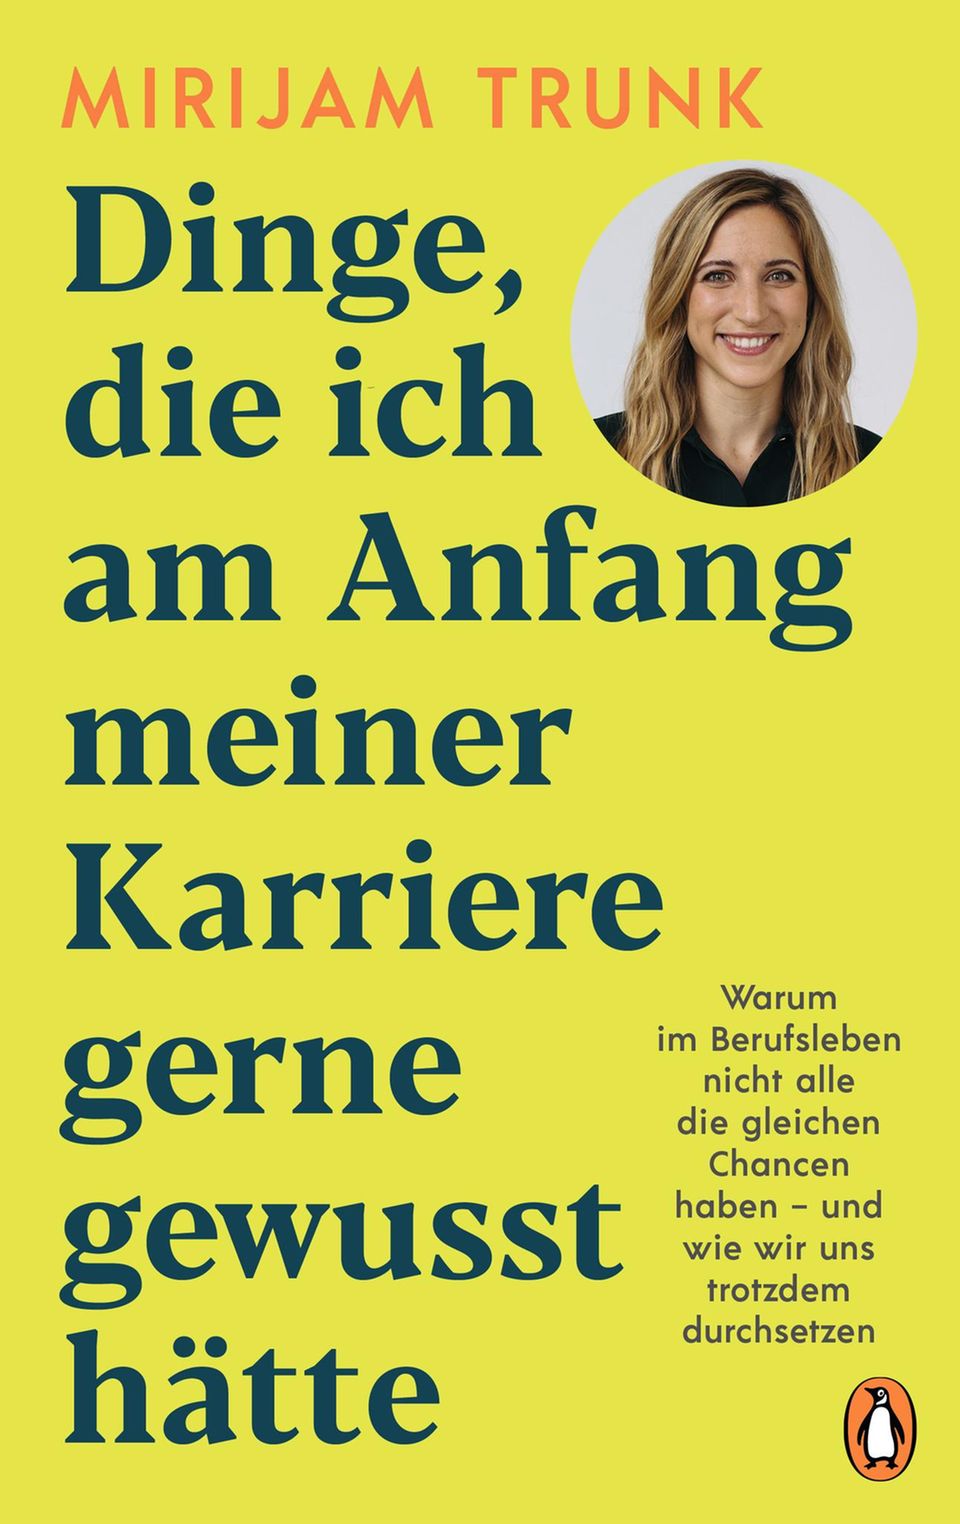 Frauen in der Arbeitswelt: 5 Punkte, warum es immer noch weniger Frauen in deutschen Chefetagen gibt